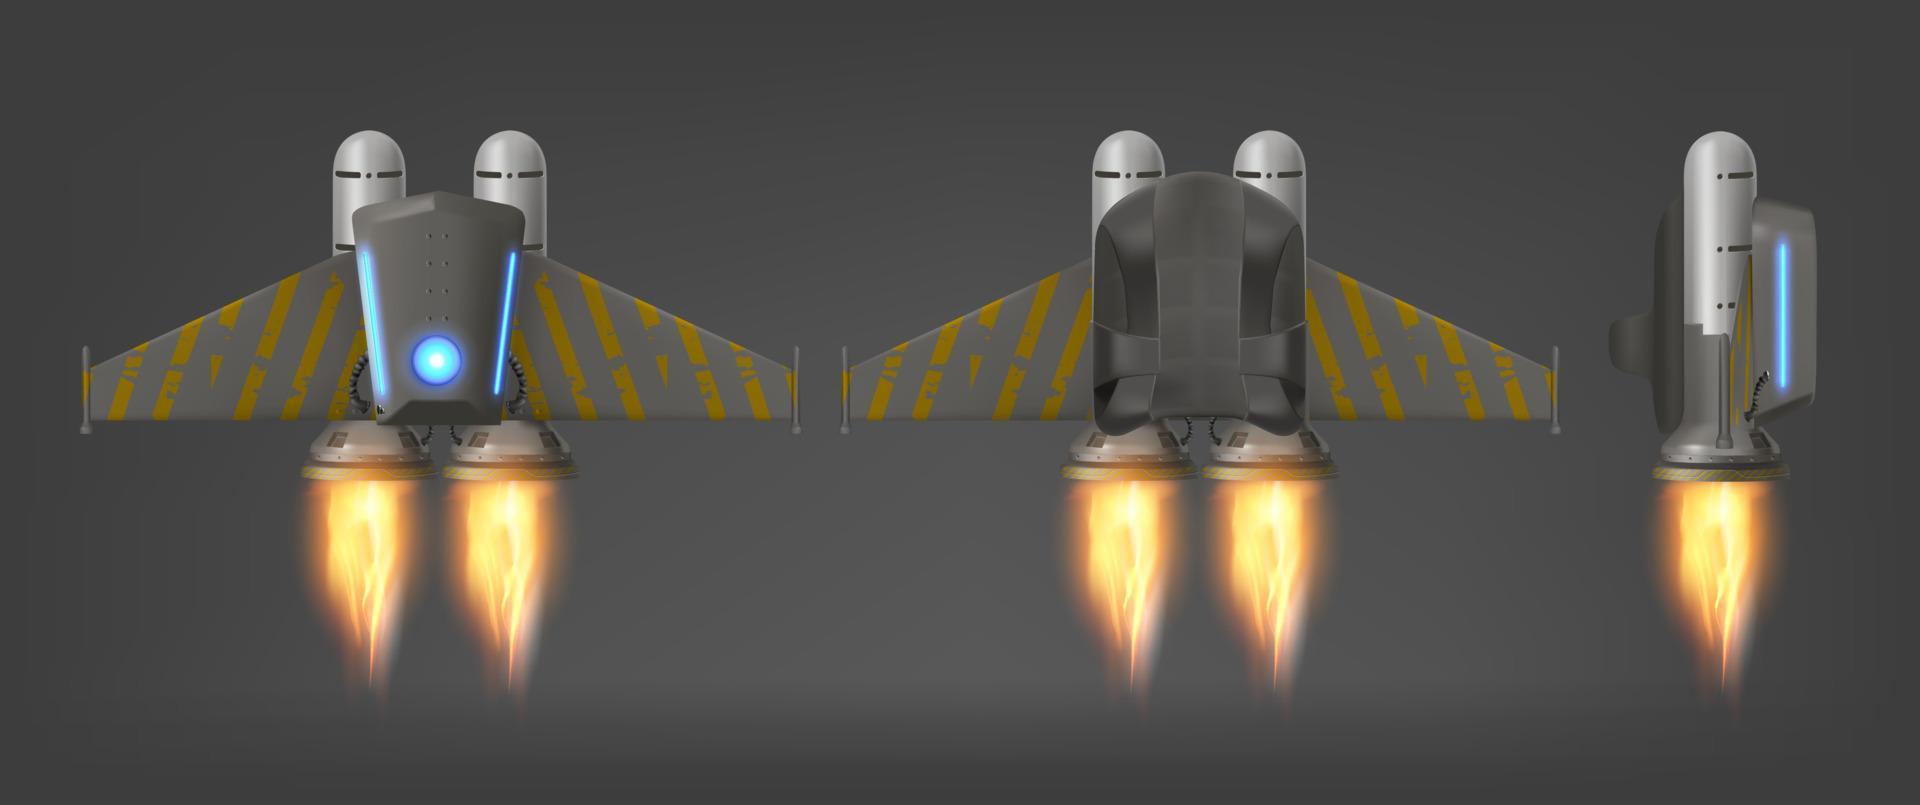 jetpack con fuego vista lateral inferior superior aislado vector